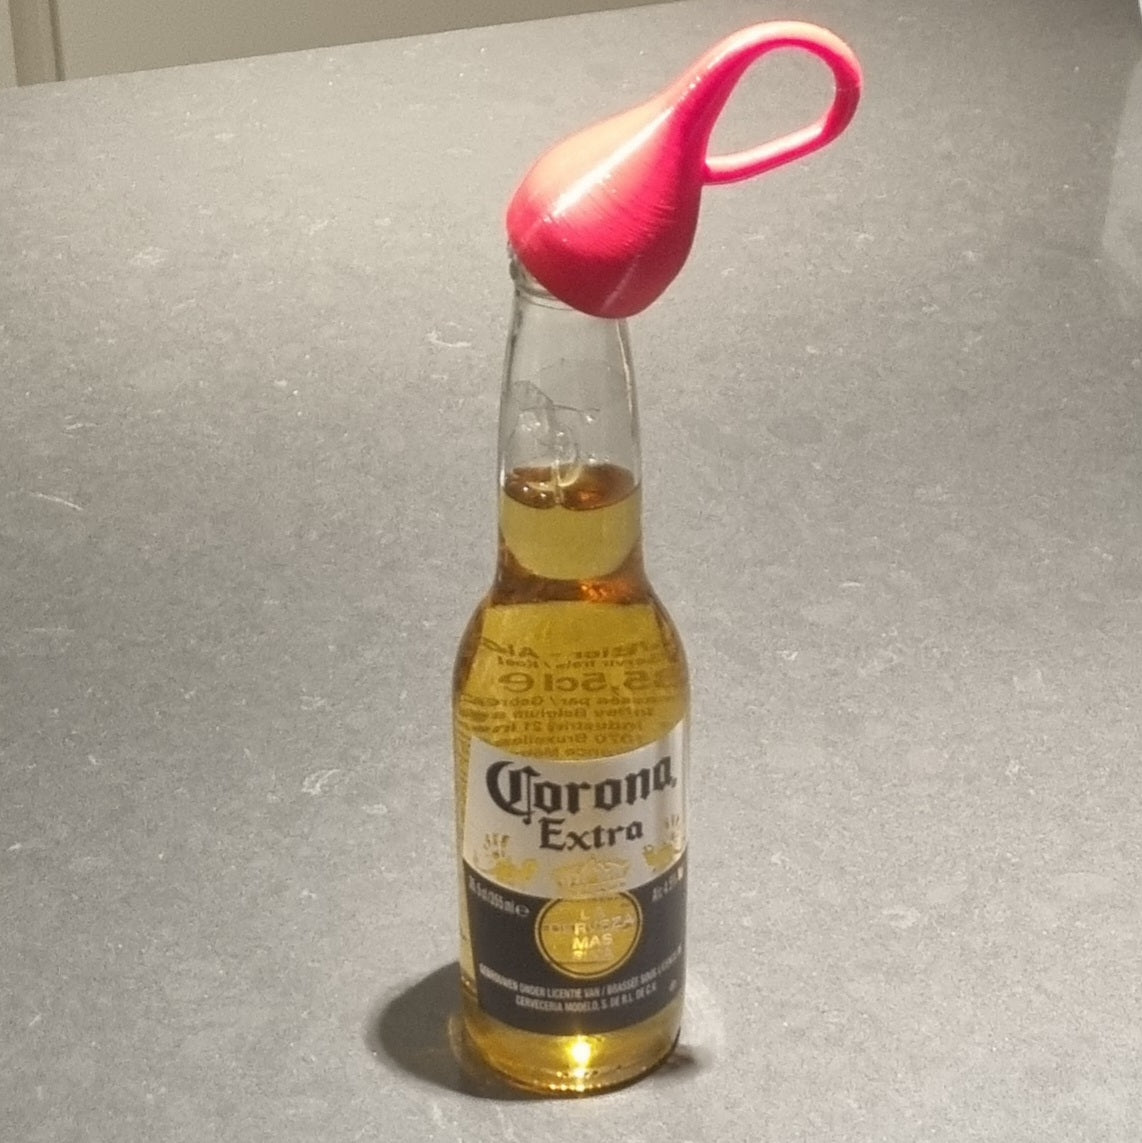 Klein bottle opener-shaped bottle opener